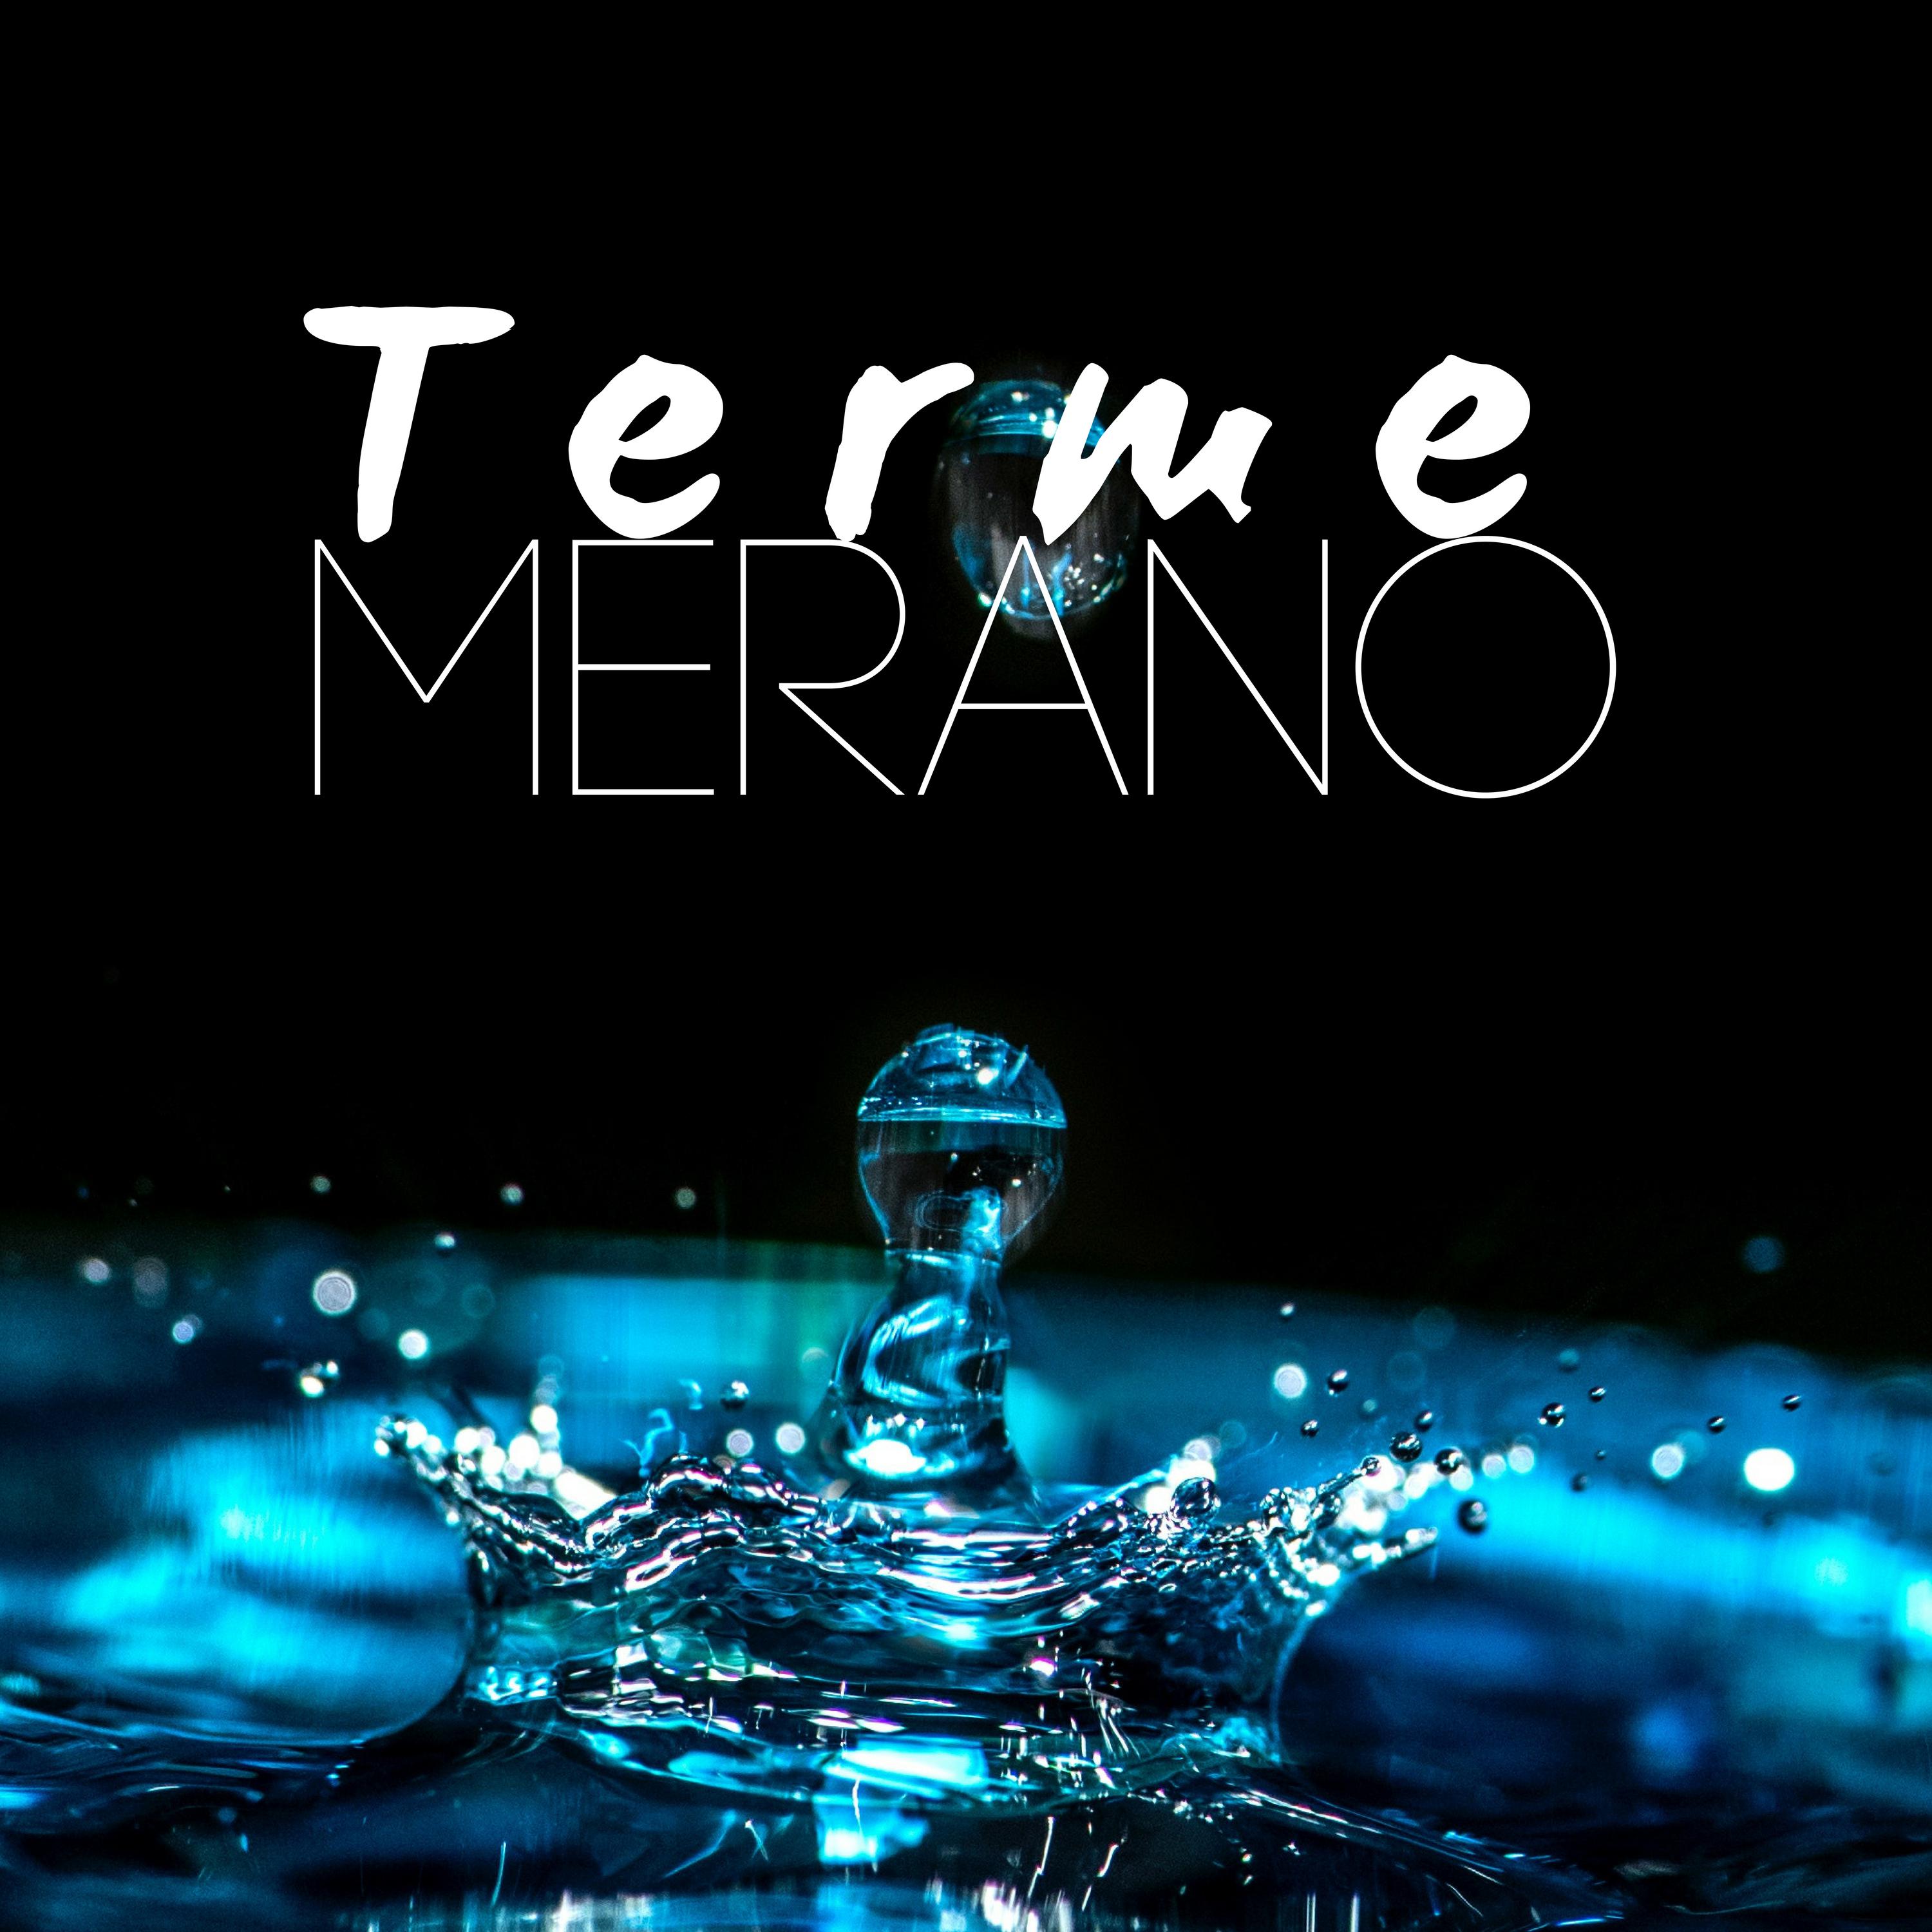 Terme Merano